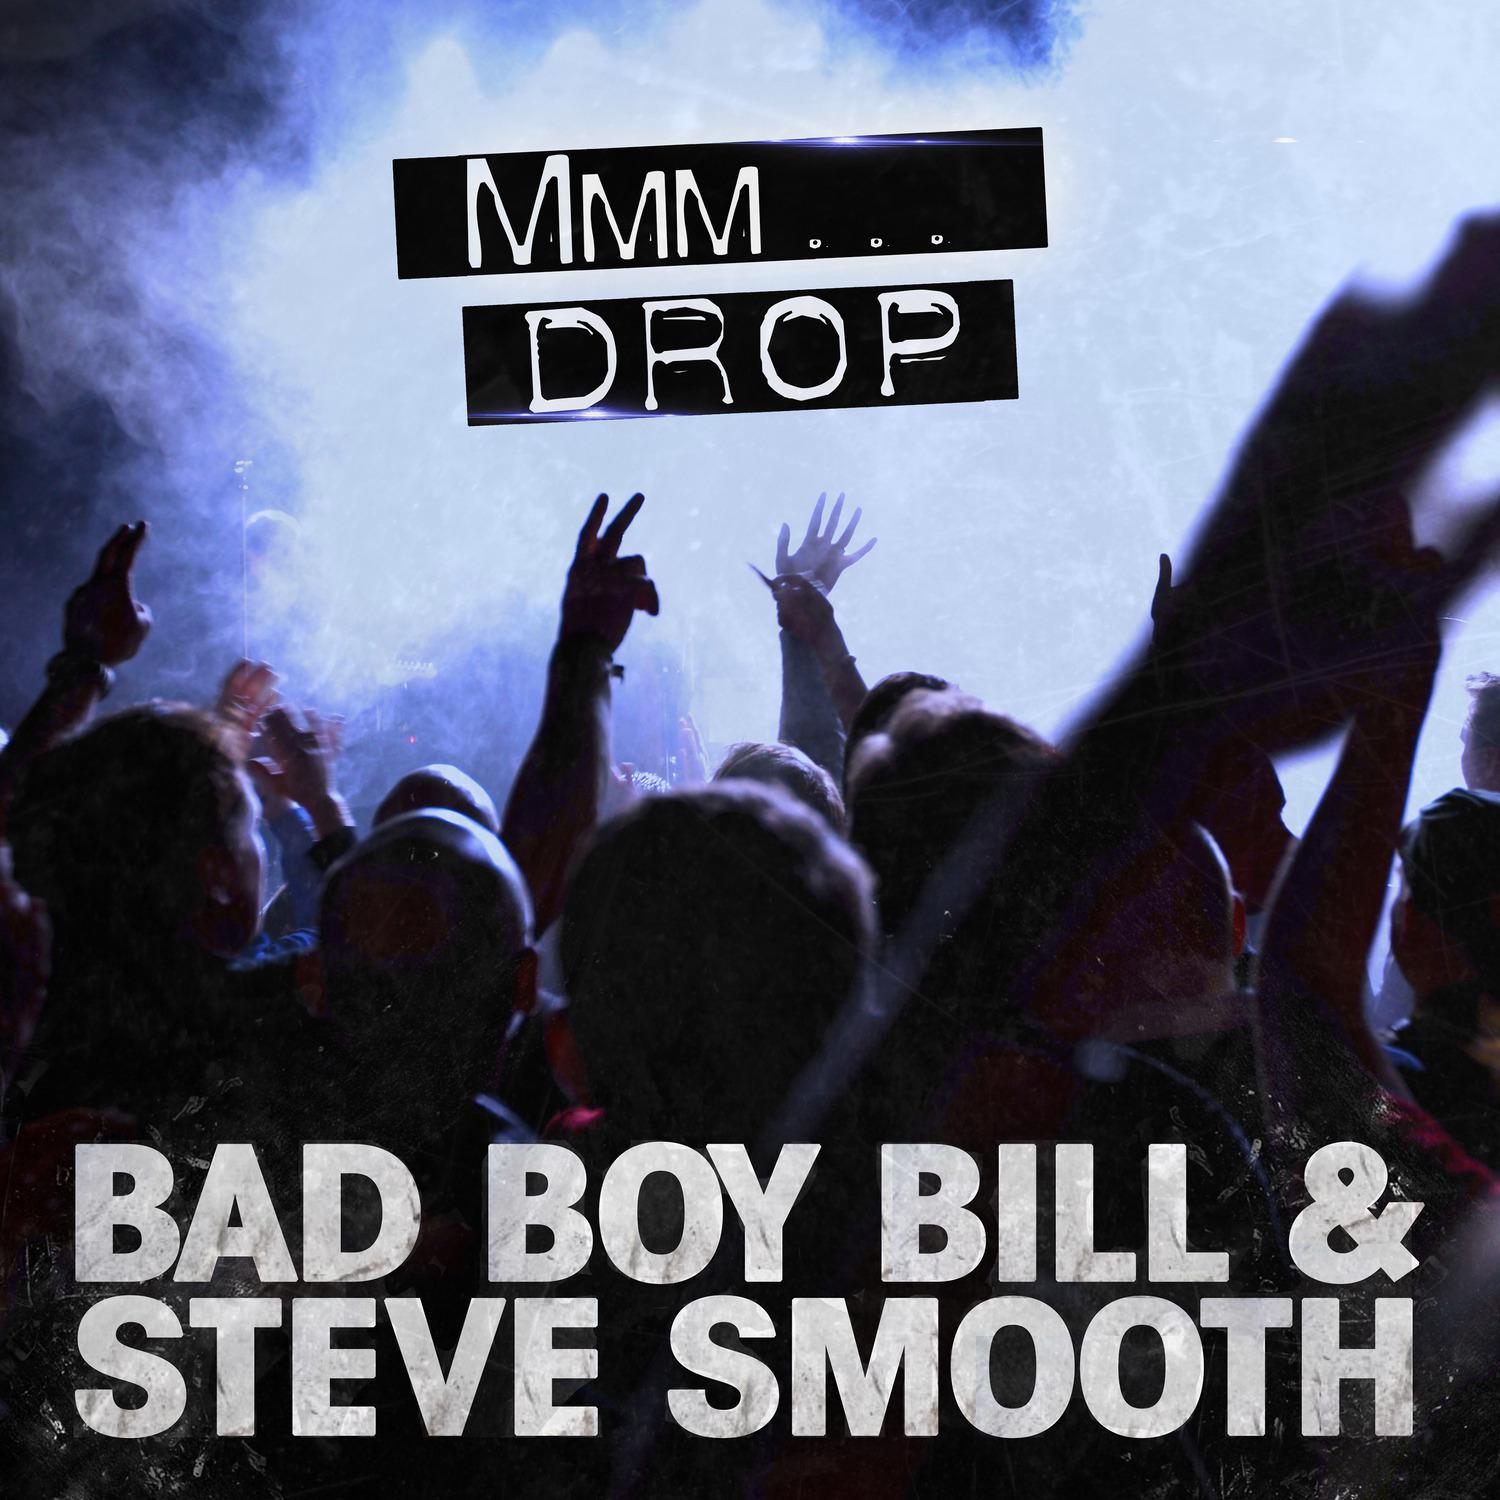 Bad Boy Bill - Mmm Drop